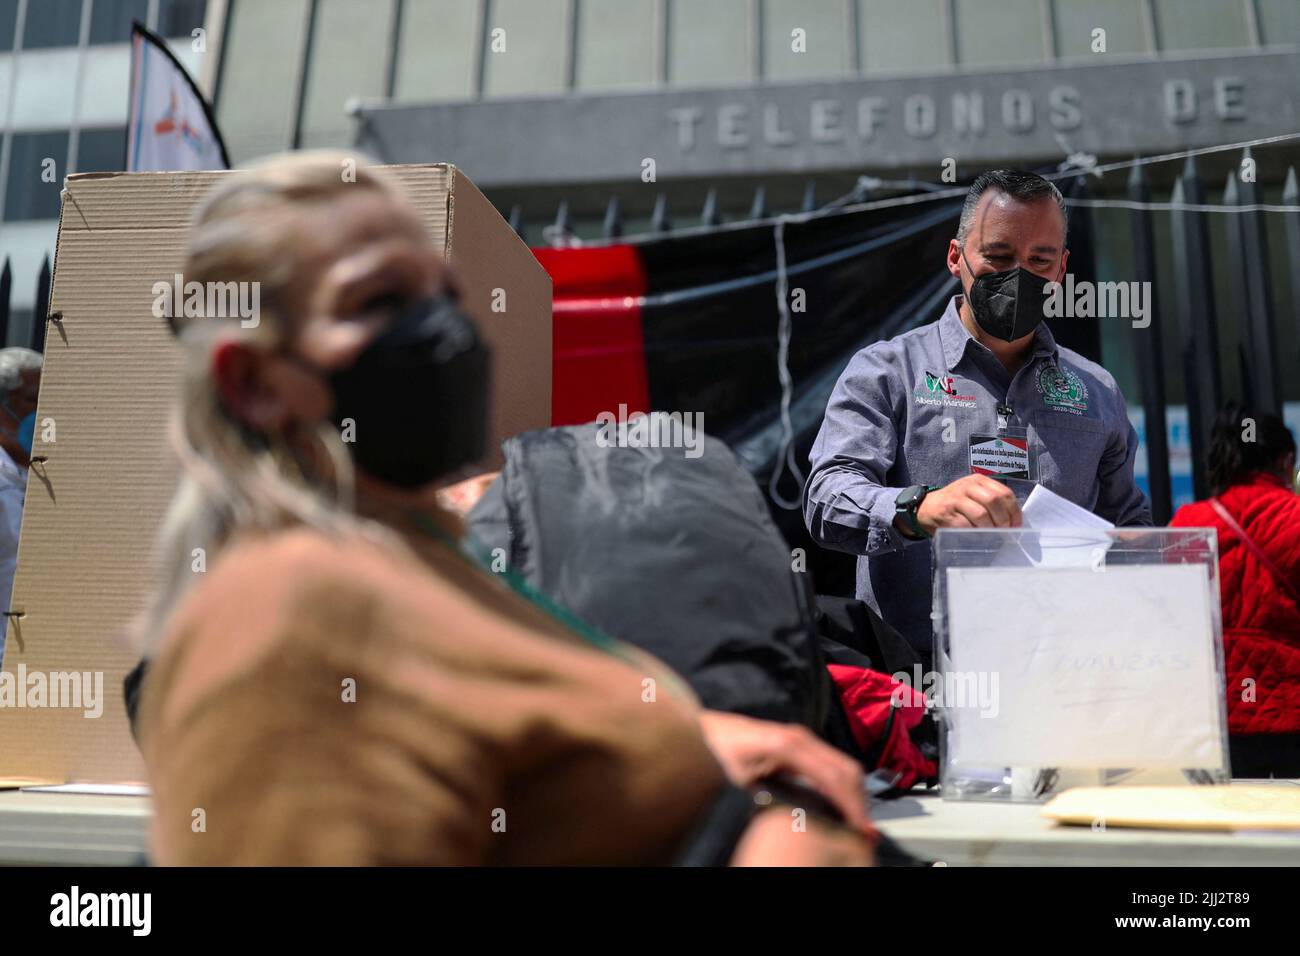 Un trabajador de Telmex vota fuera de la sede de Telmex luego de que el sindicato de la compañía se declarara en huelga después de no llegar a un acuerdo con la compañía sobre un nuevo convenio colectivo laboral, en Ciudad de México, México, el 22 de julio de 2022. REUTERS/Edgard Garrido Foto de stock